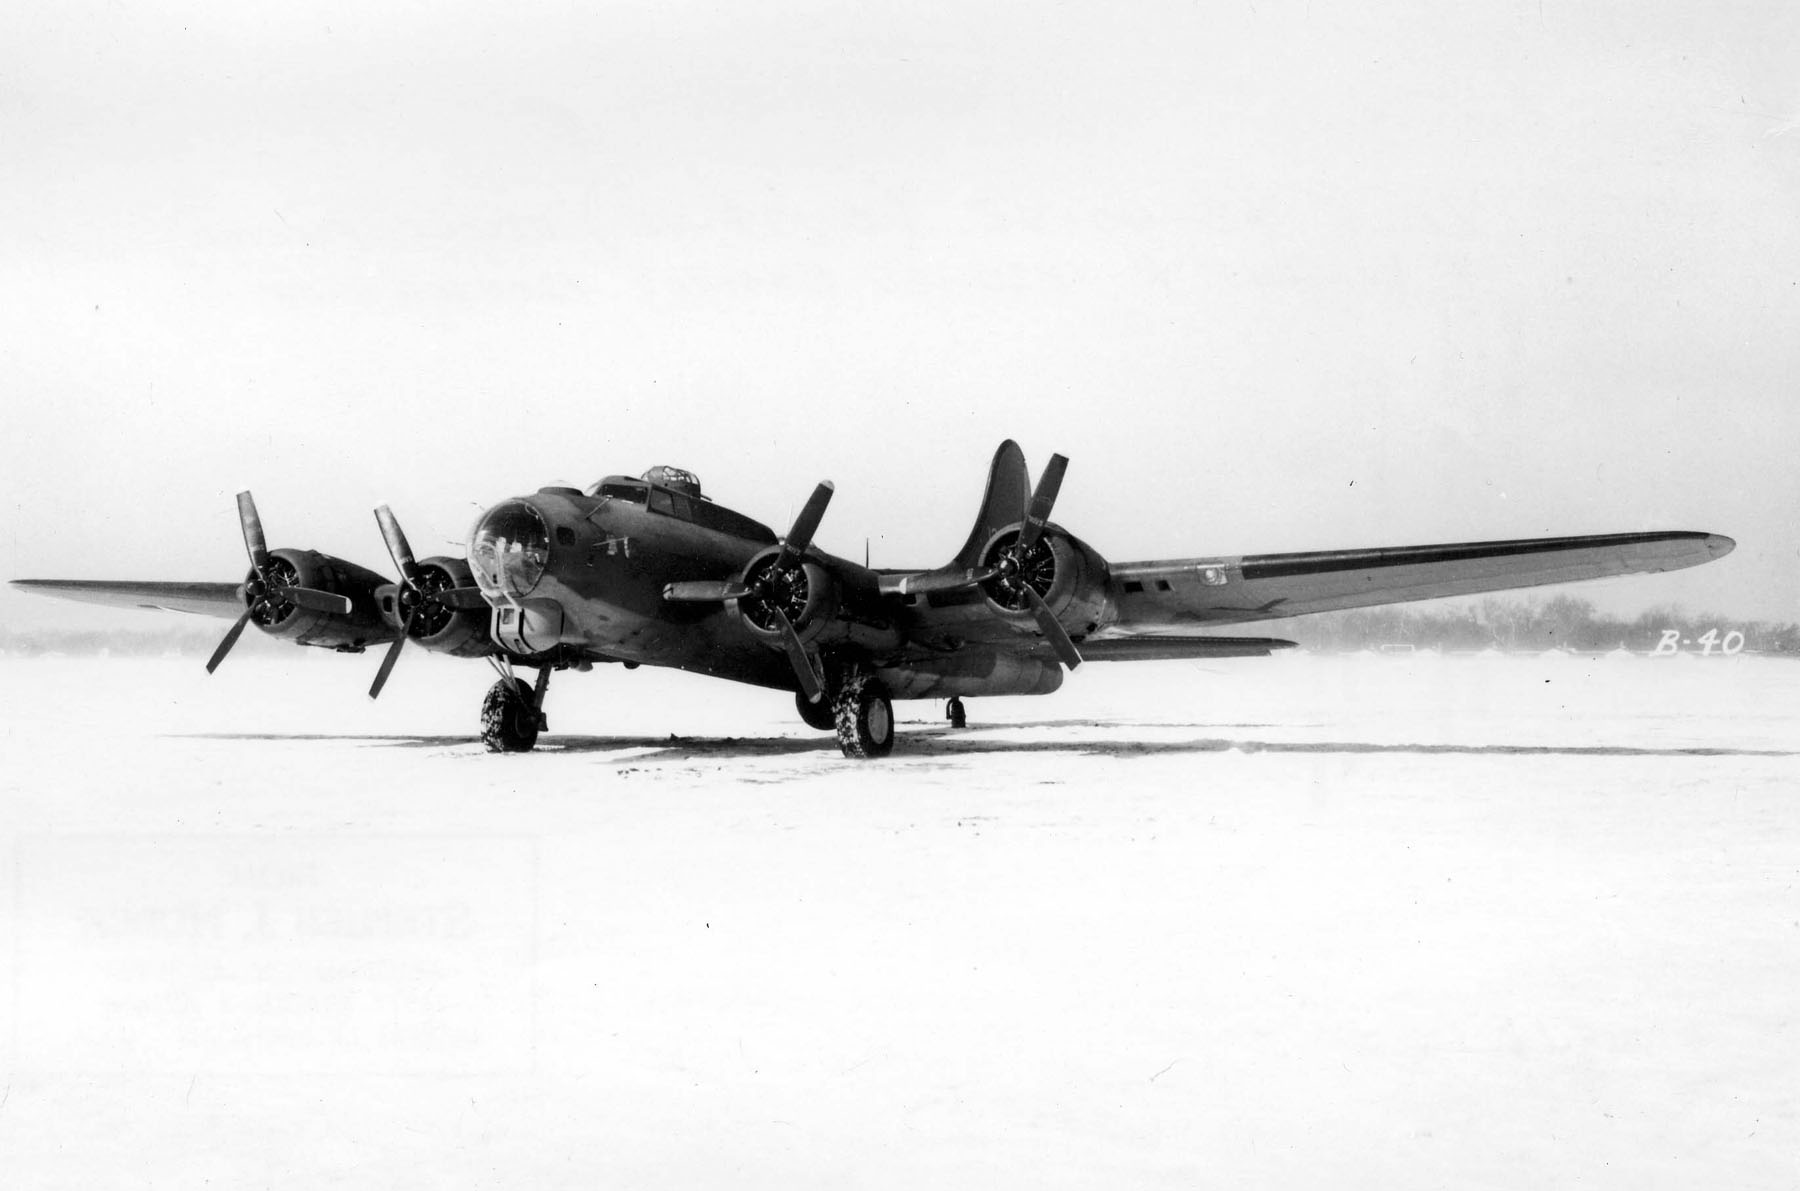 B-17 #41-24341